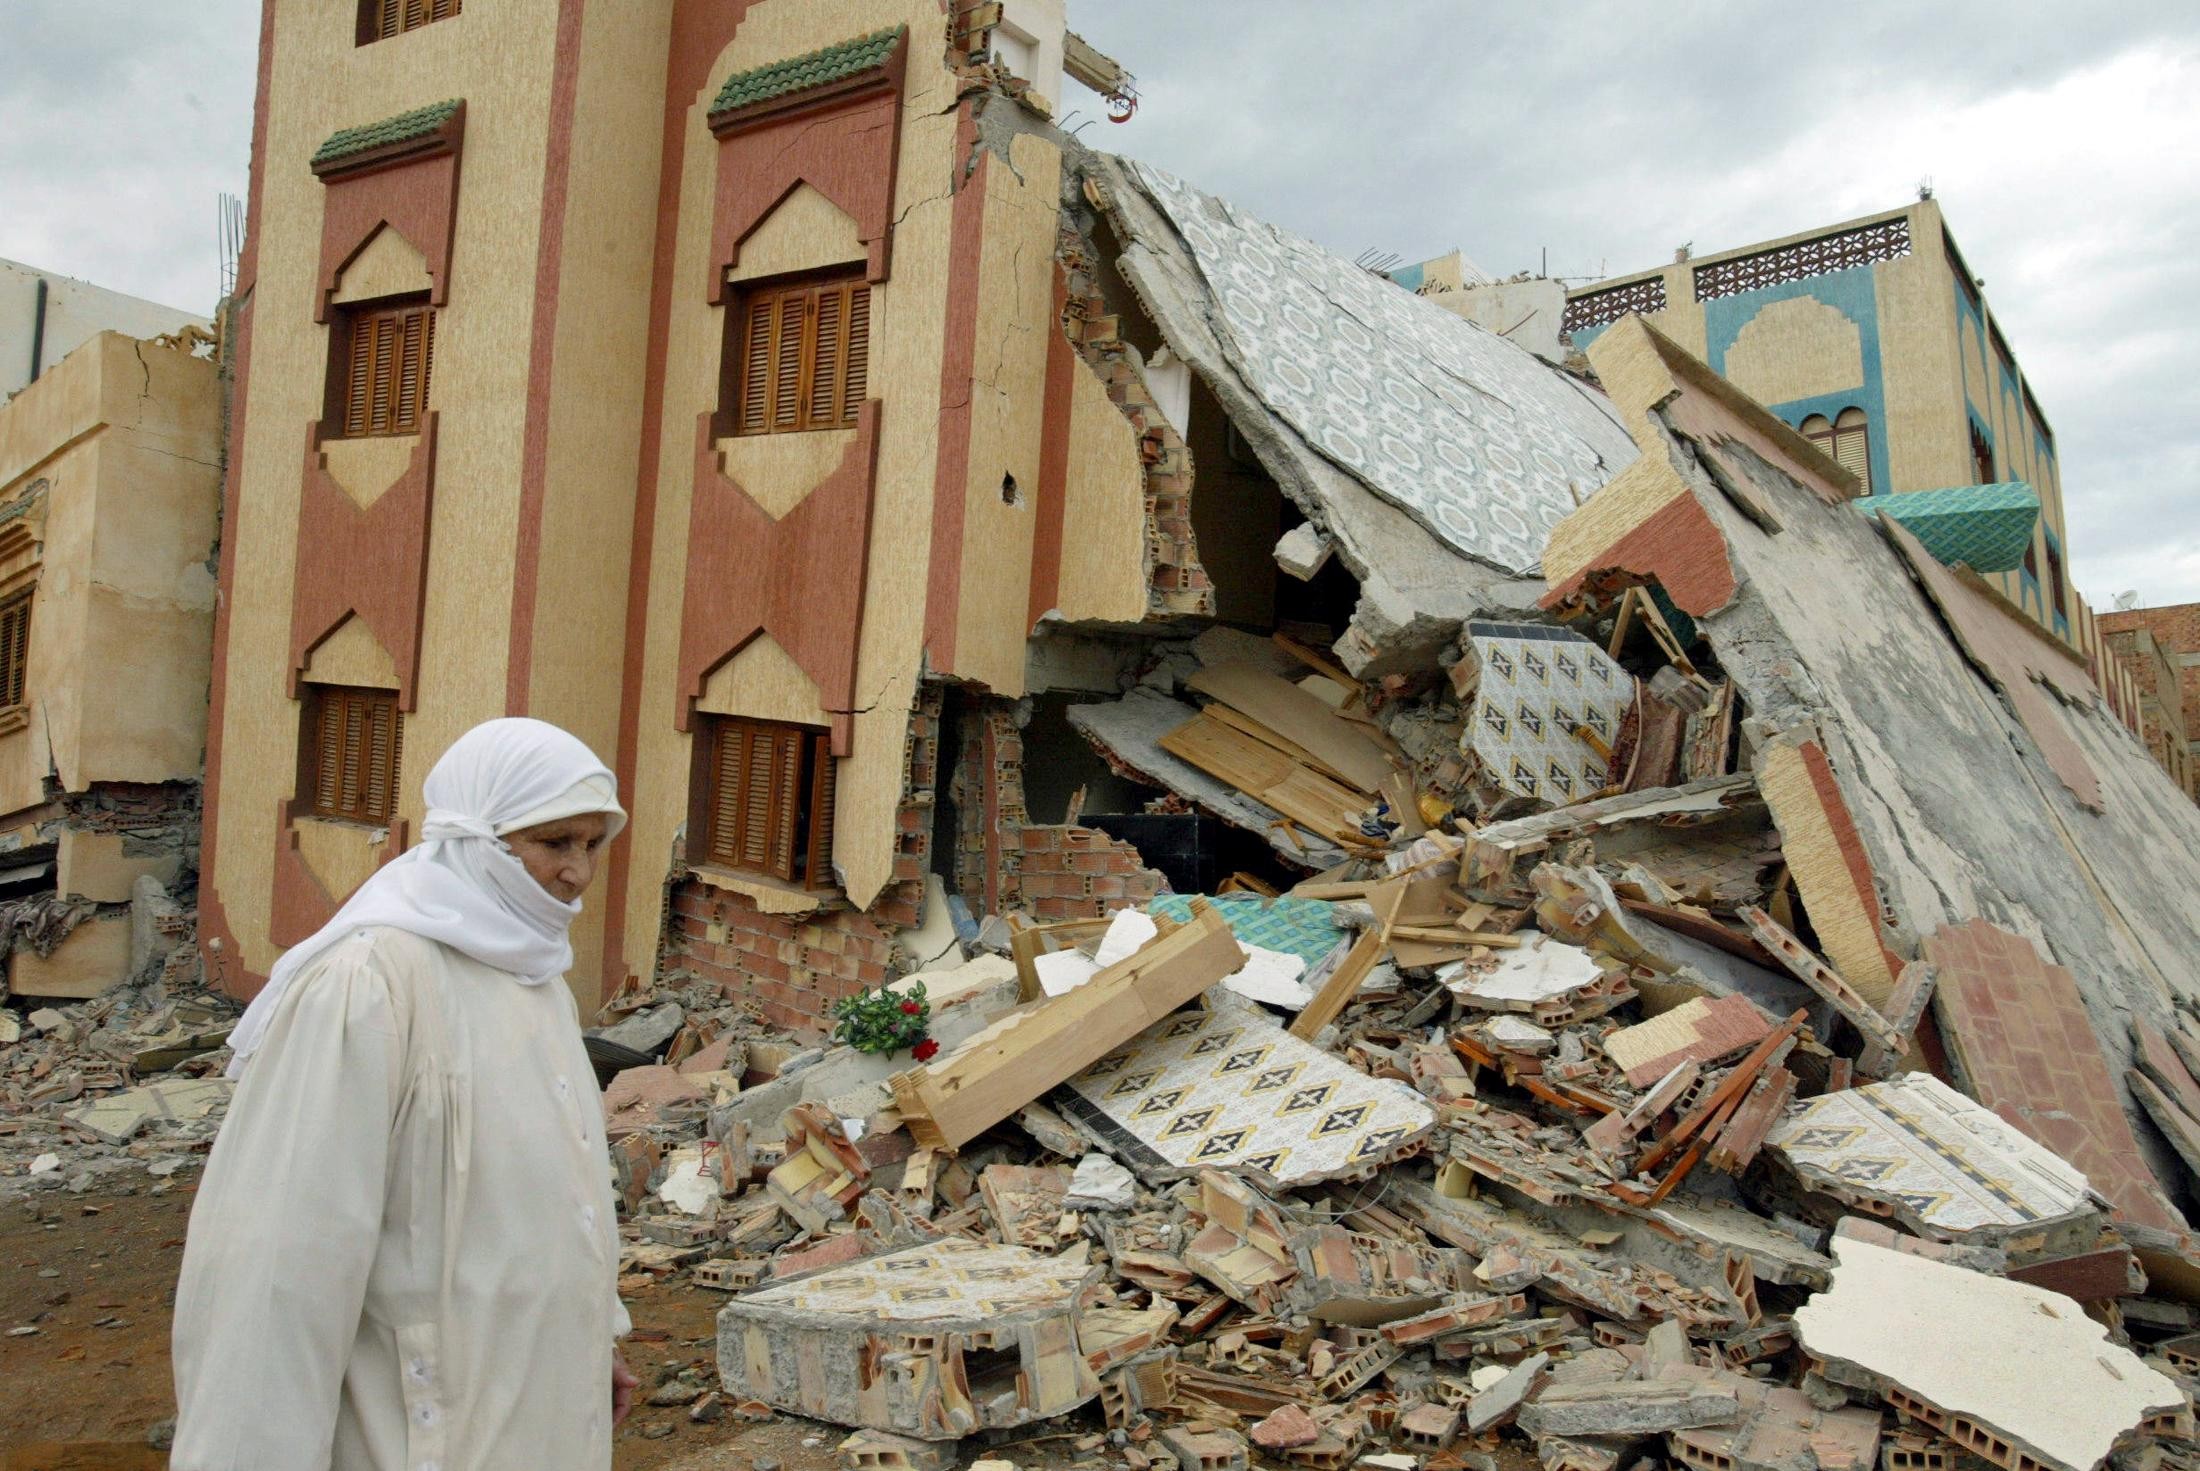 Immeuble effondré à dix kilomètres au sud d’Al Hoceima (Maroc), le 24 février 2004 (AFP)